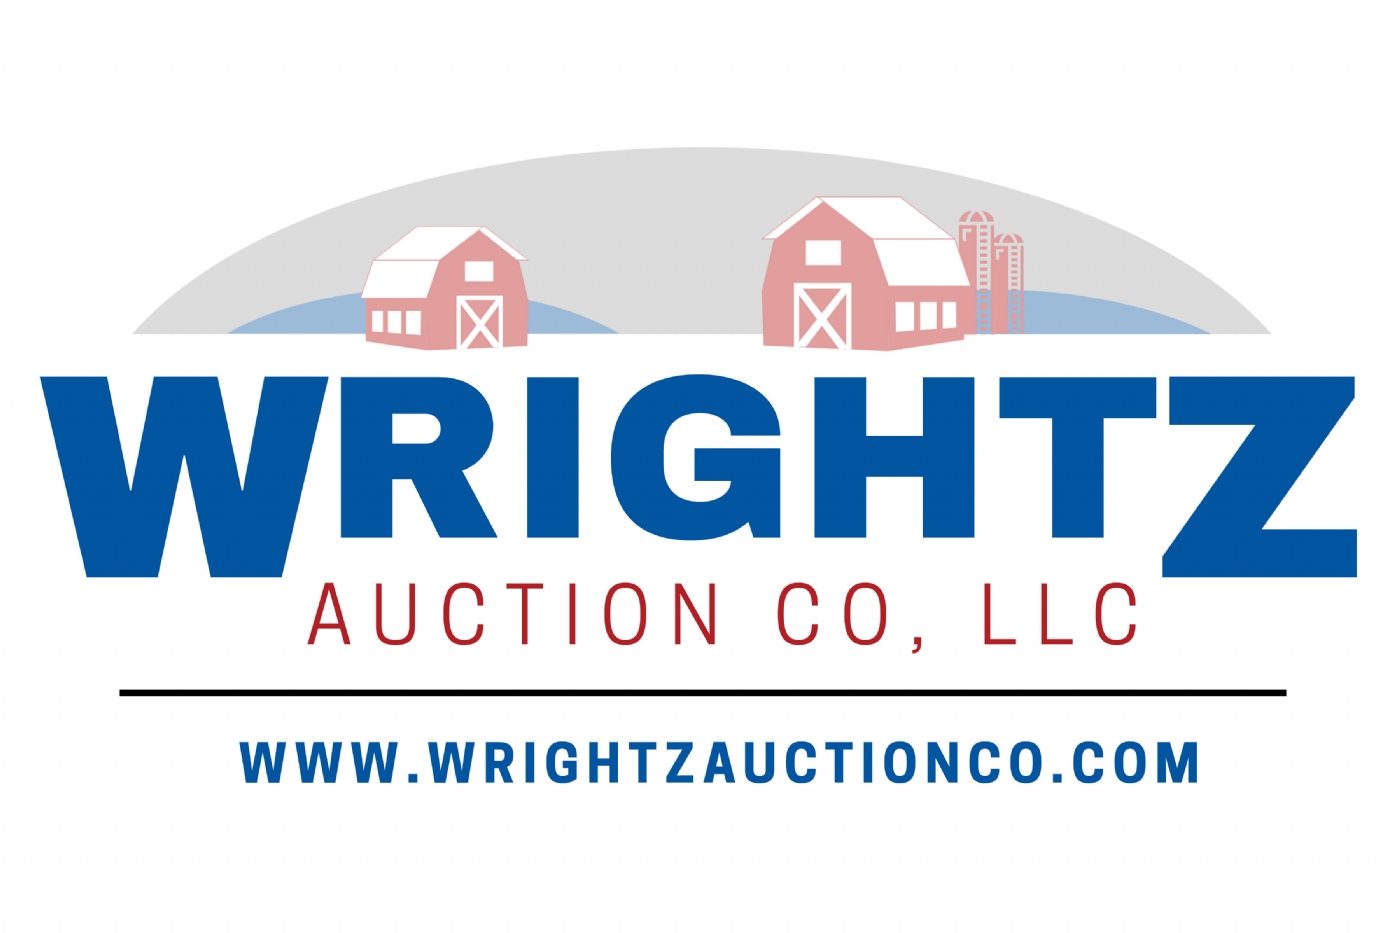 Wrightz Auction Company